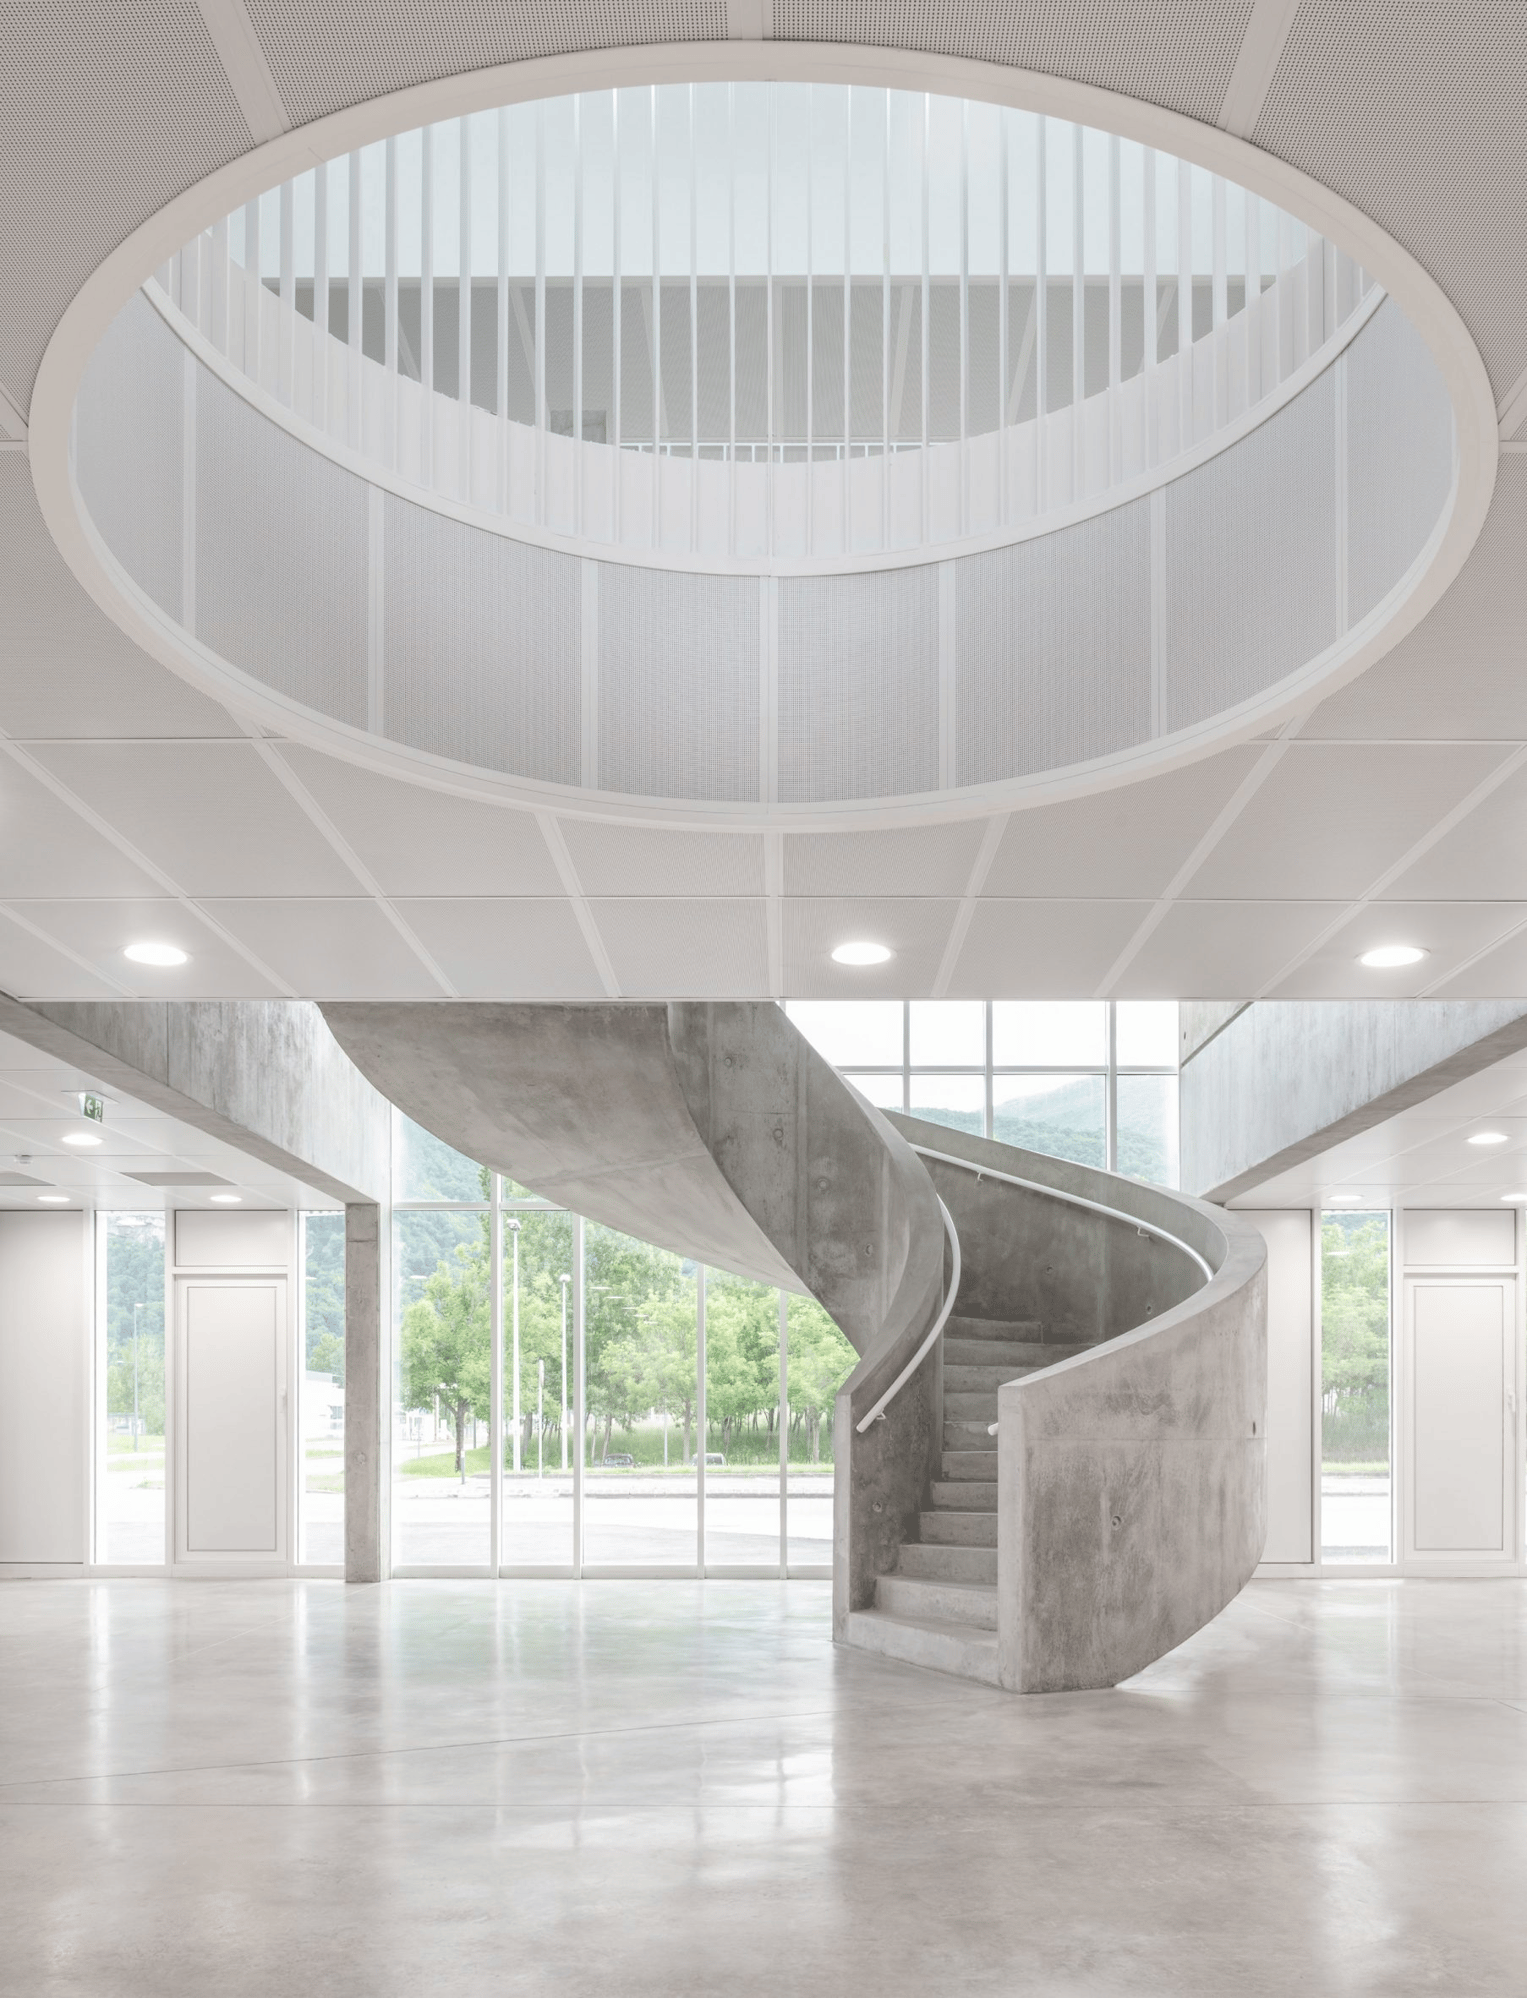 levitt-bernstein-tkmt-architects-neutron-research-centre-france-architecture_dezeen_2364_col_12-scaled